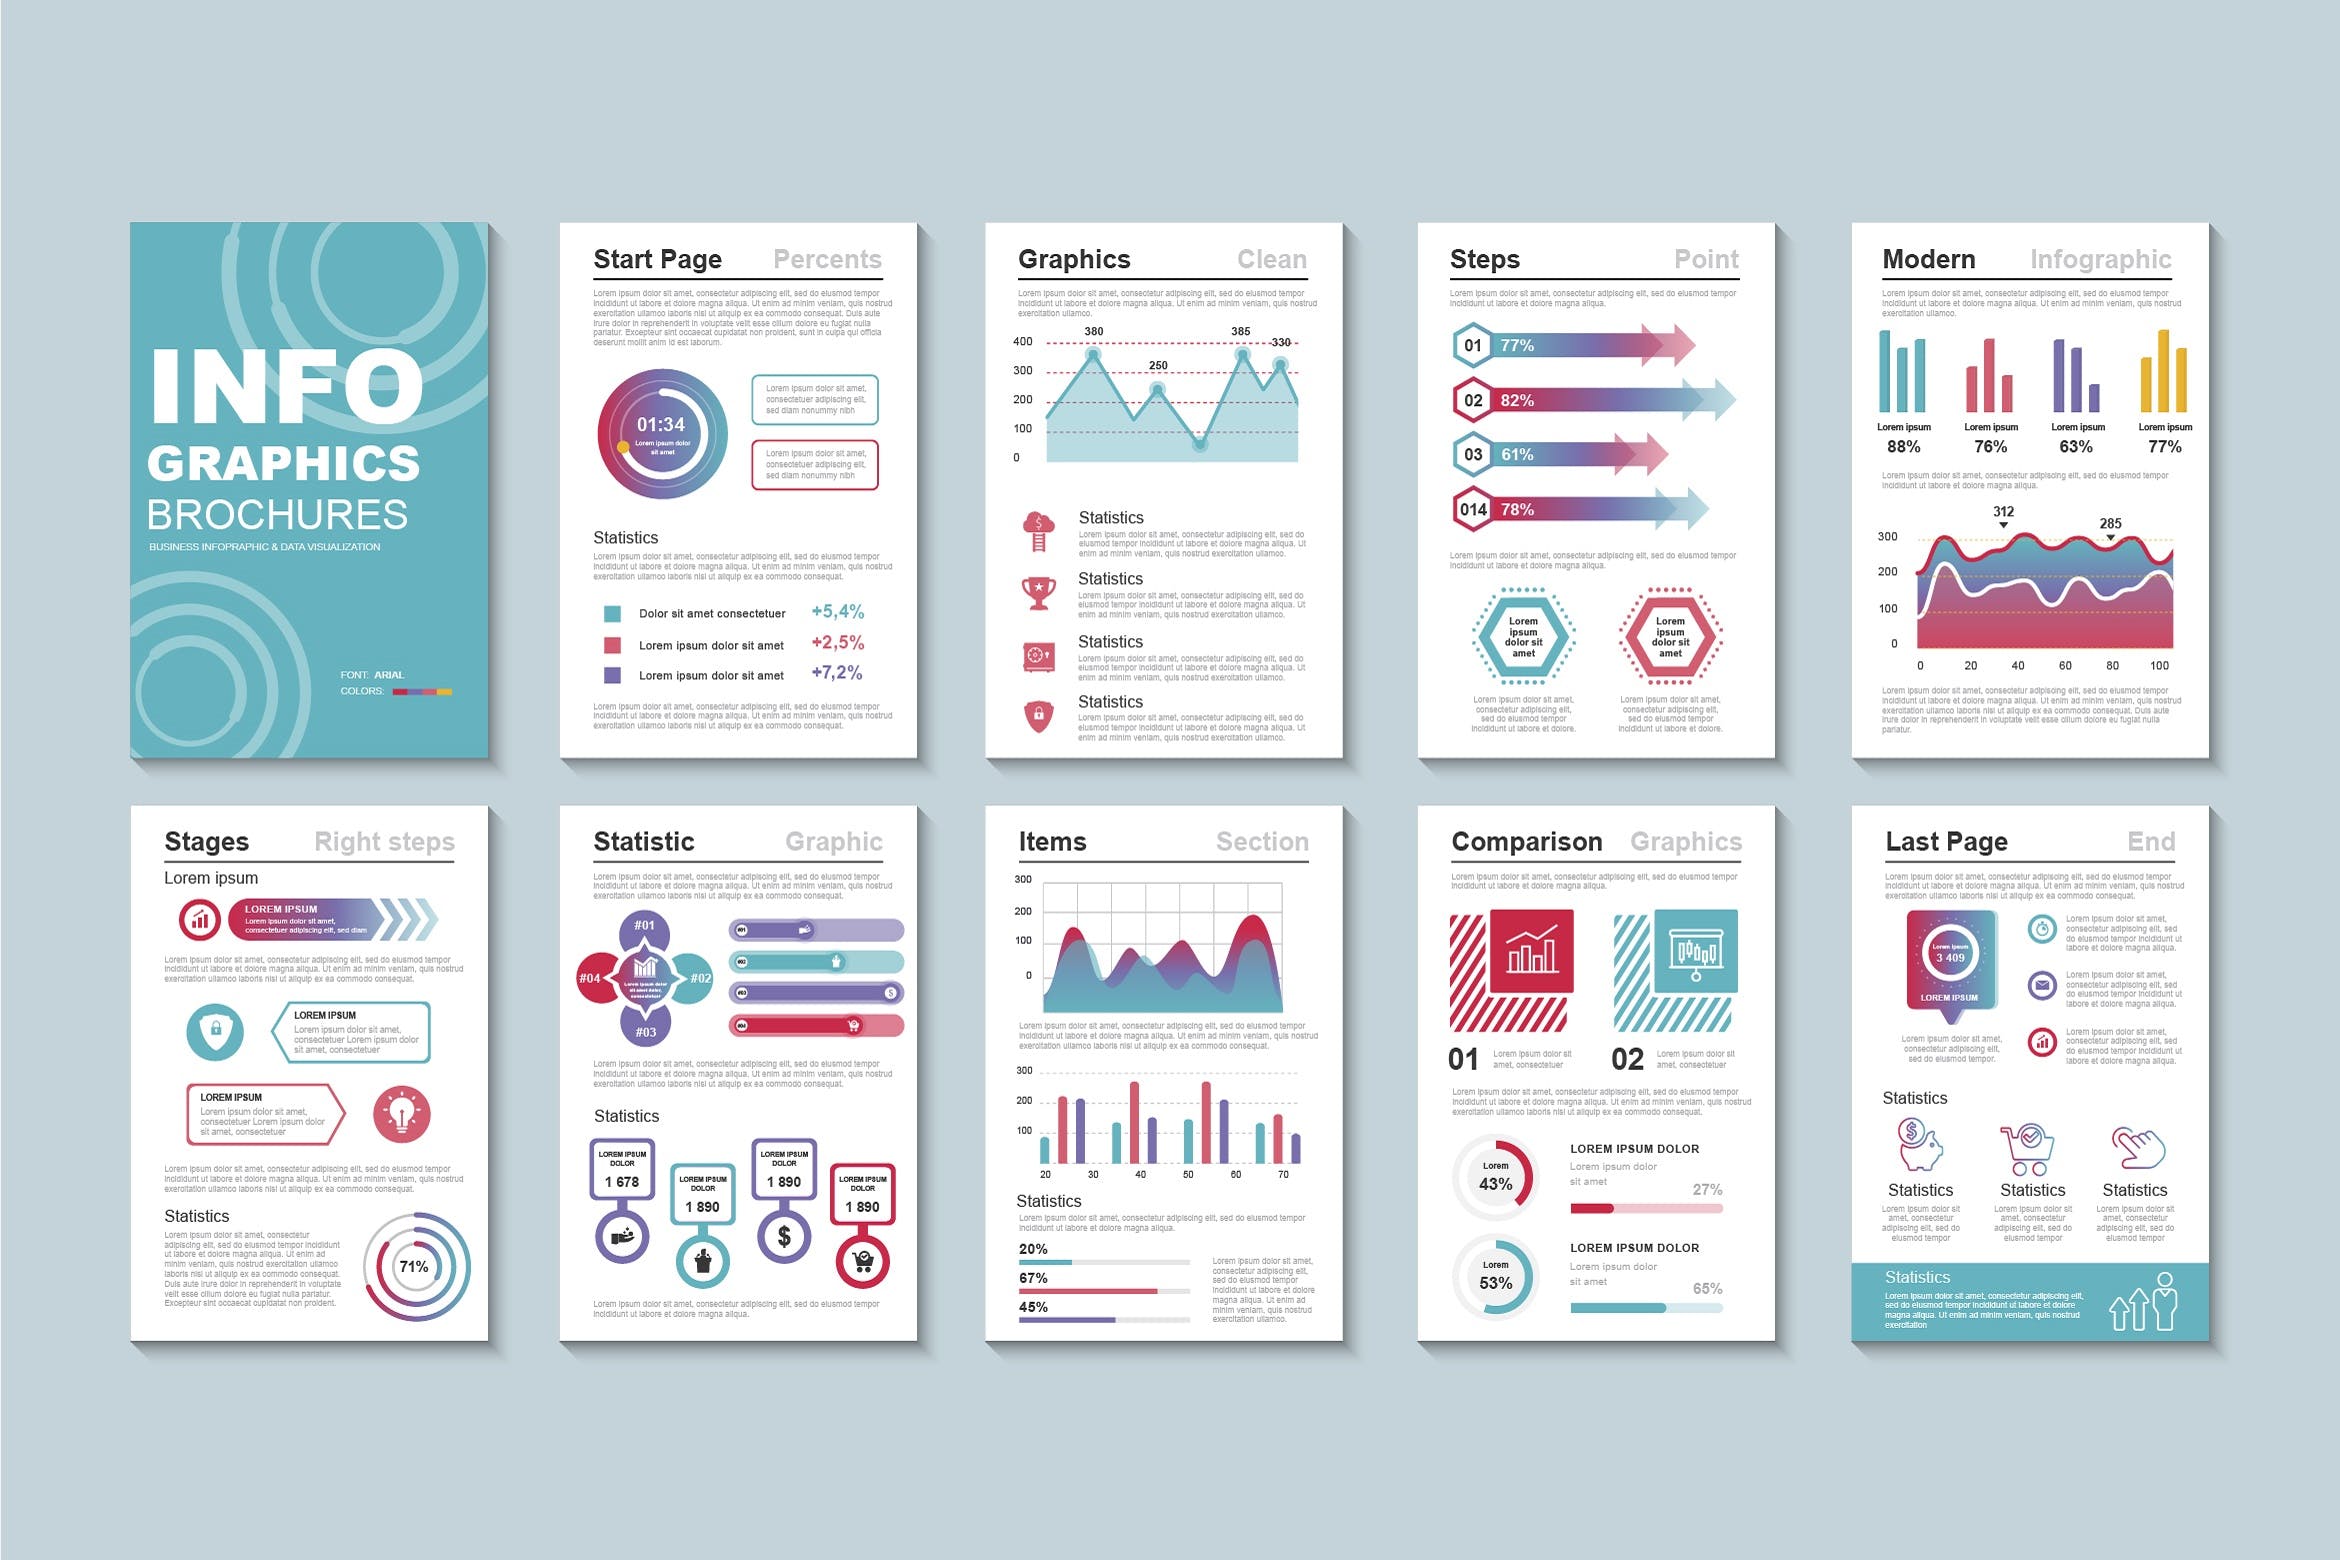 宣传册设计商业数据图表模板v1 Business Infographic Brochure Design Template设计素材模板